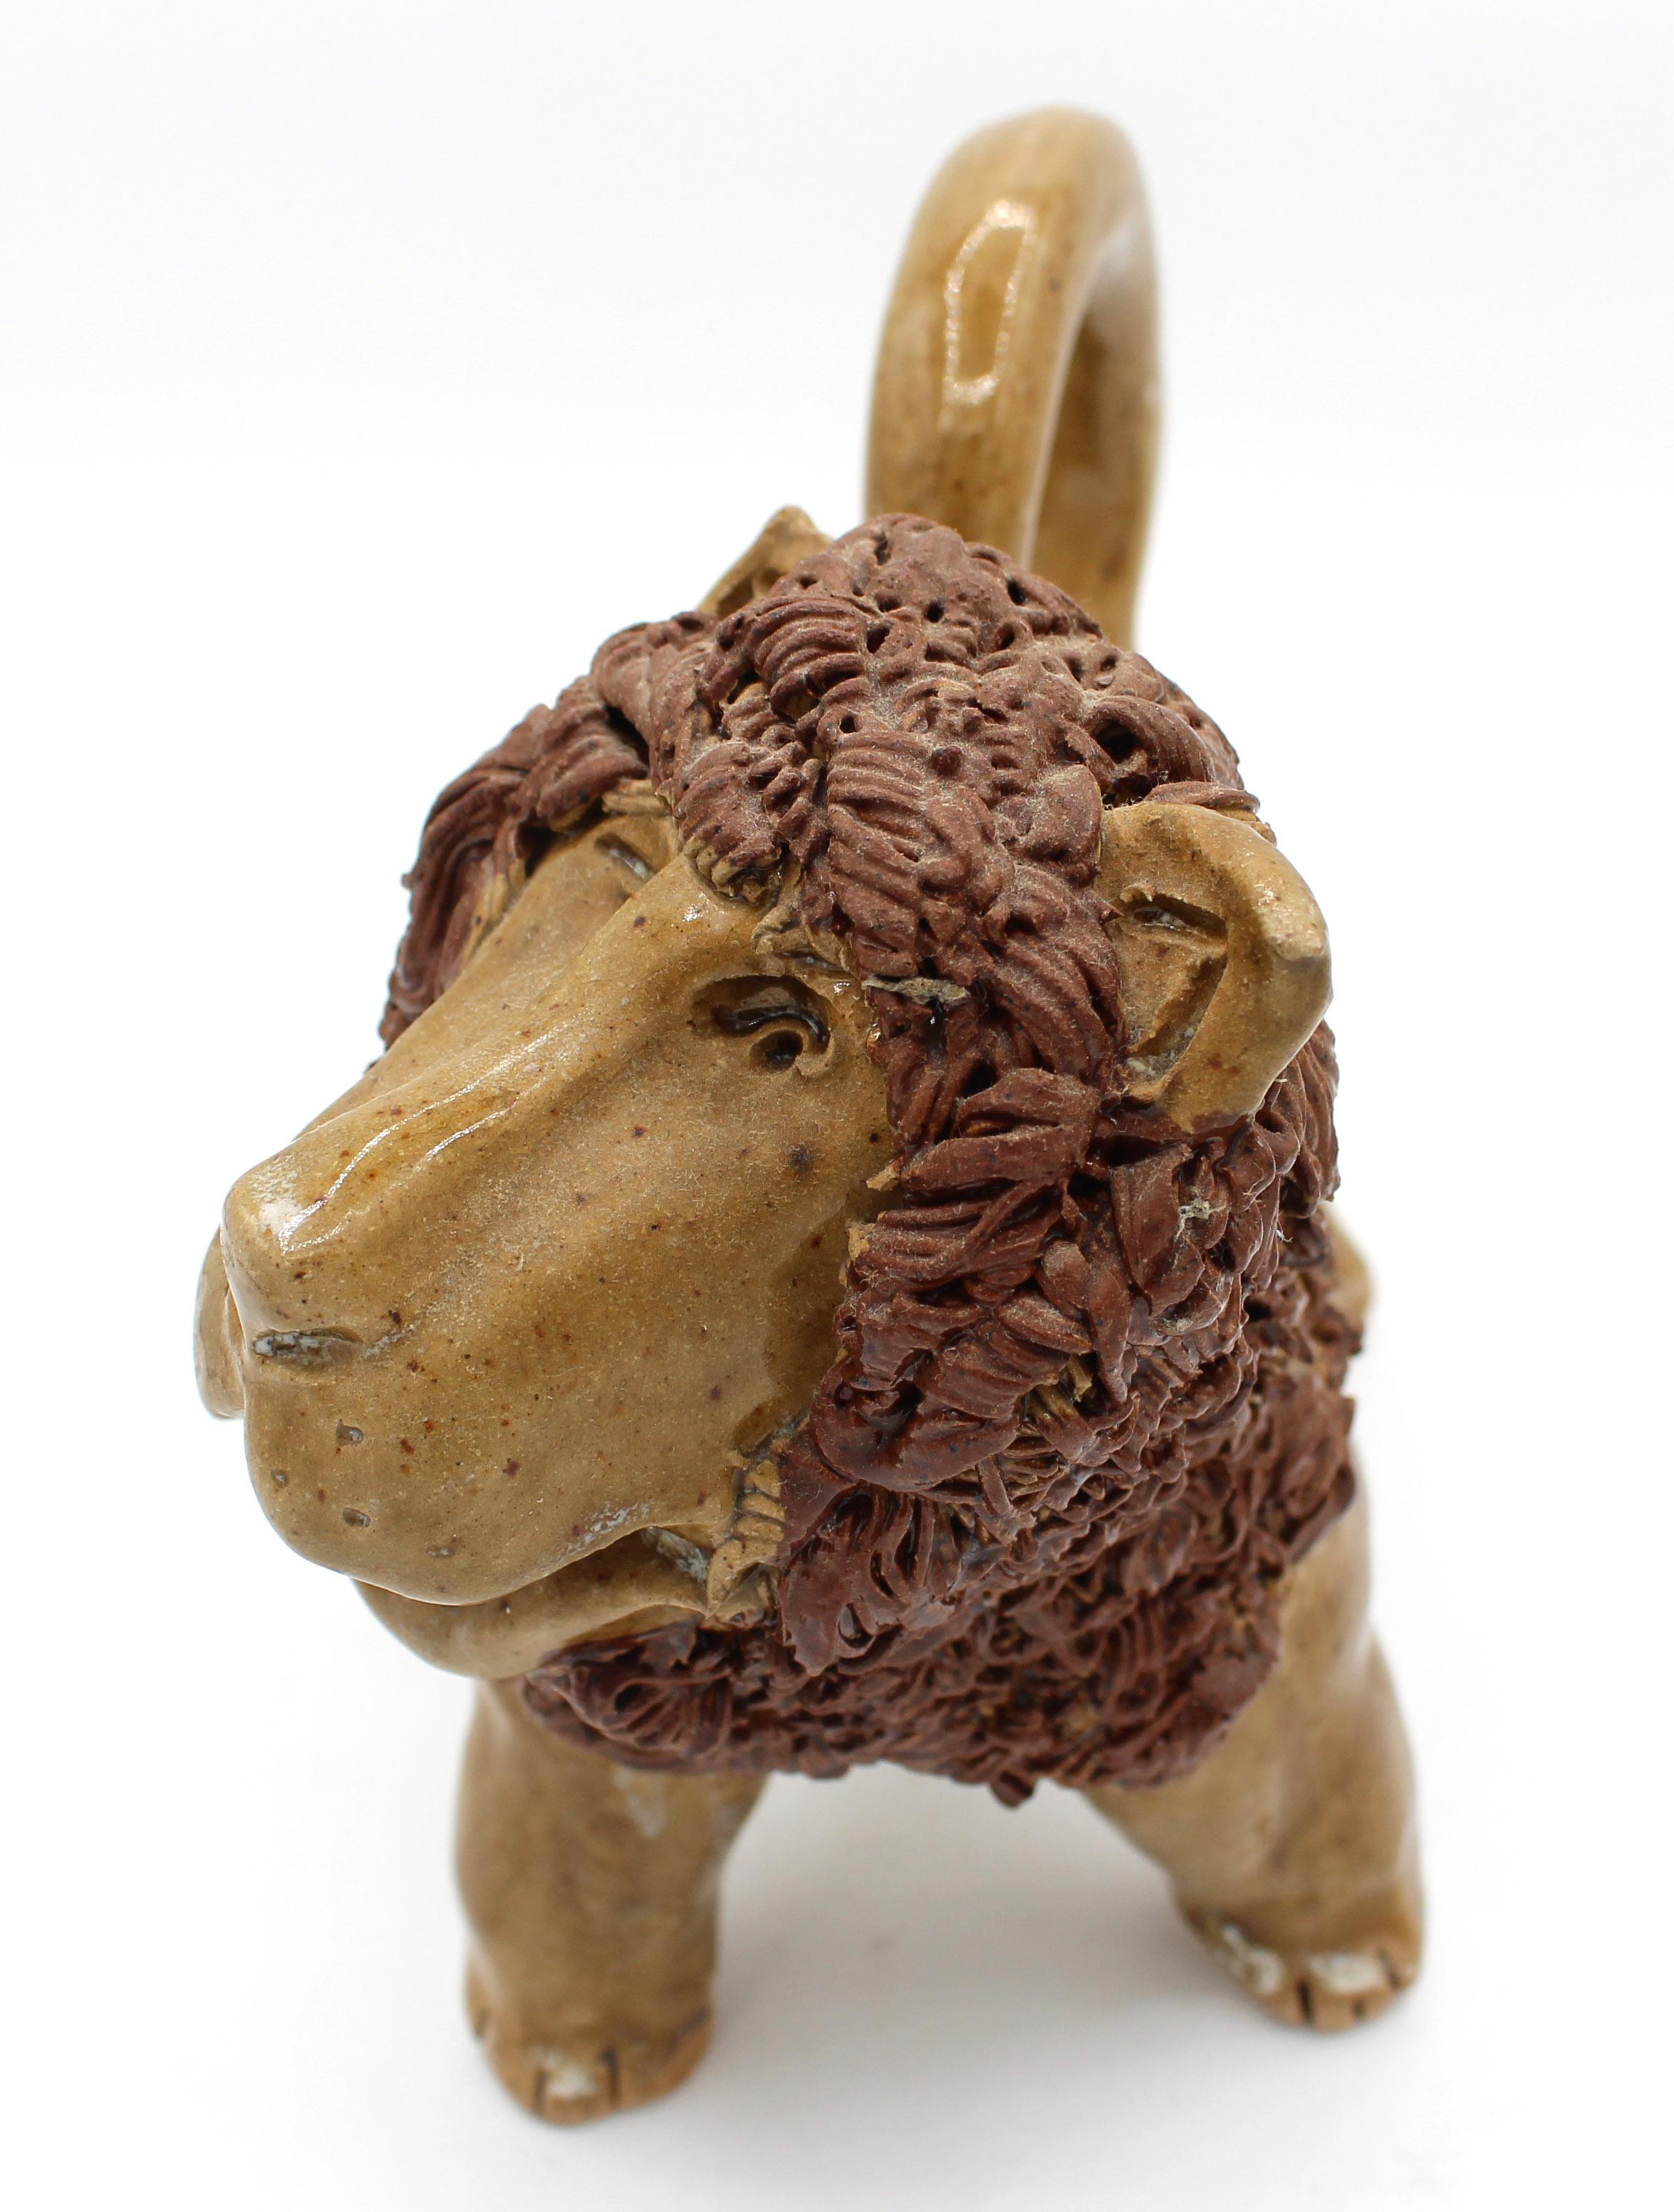 Lion en poterie signé en 2007 par Crystal King, Seagrove, NC. Les figurines d'animaux sont difficiles à trouver et très populaires - celle-ci avec un beau visage !
8,75